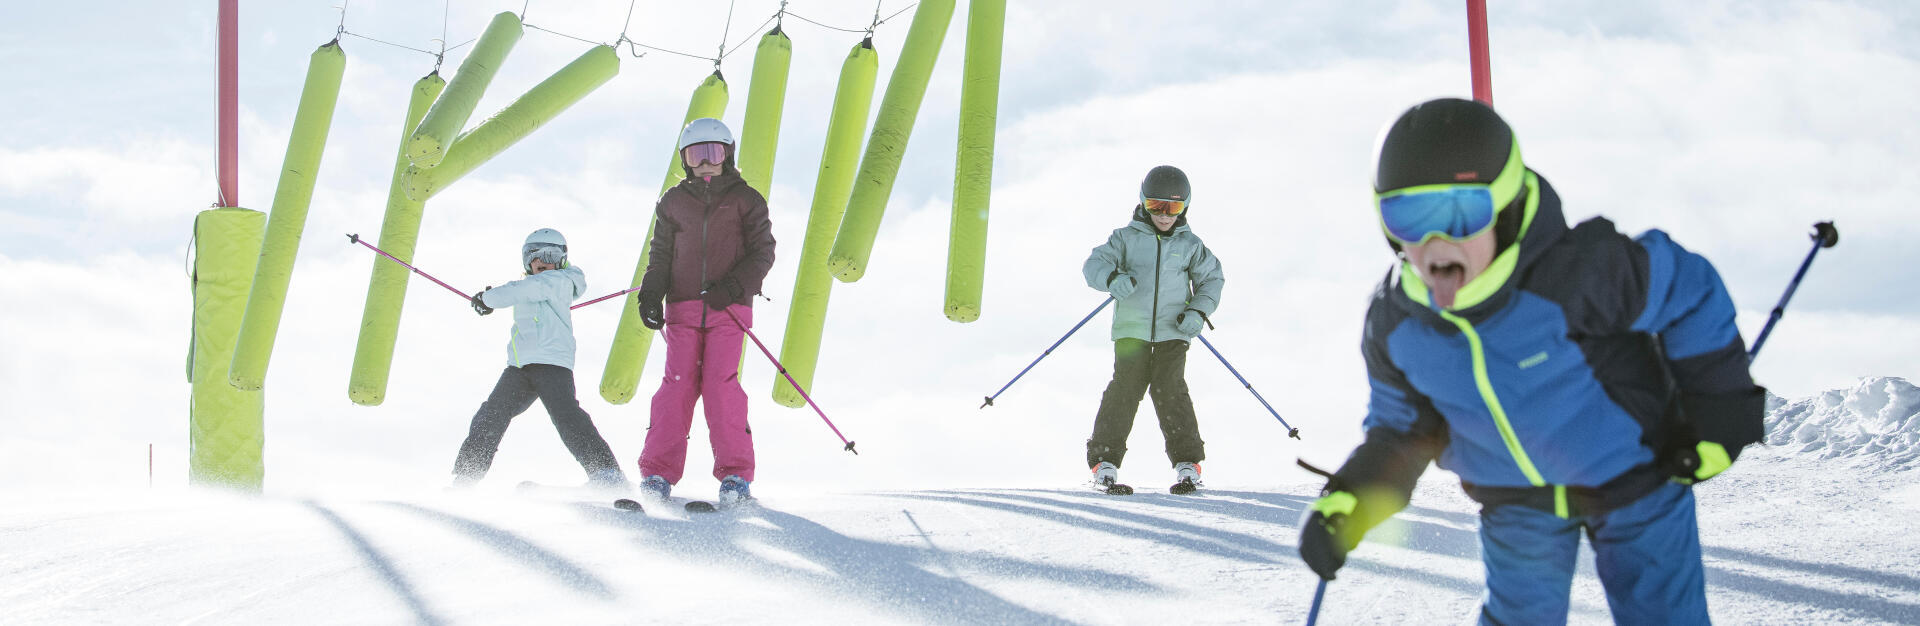 Como levar as crianças a gostarem de ski?